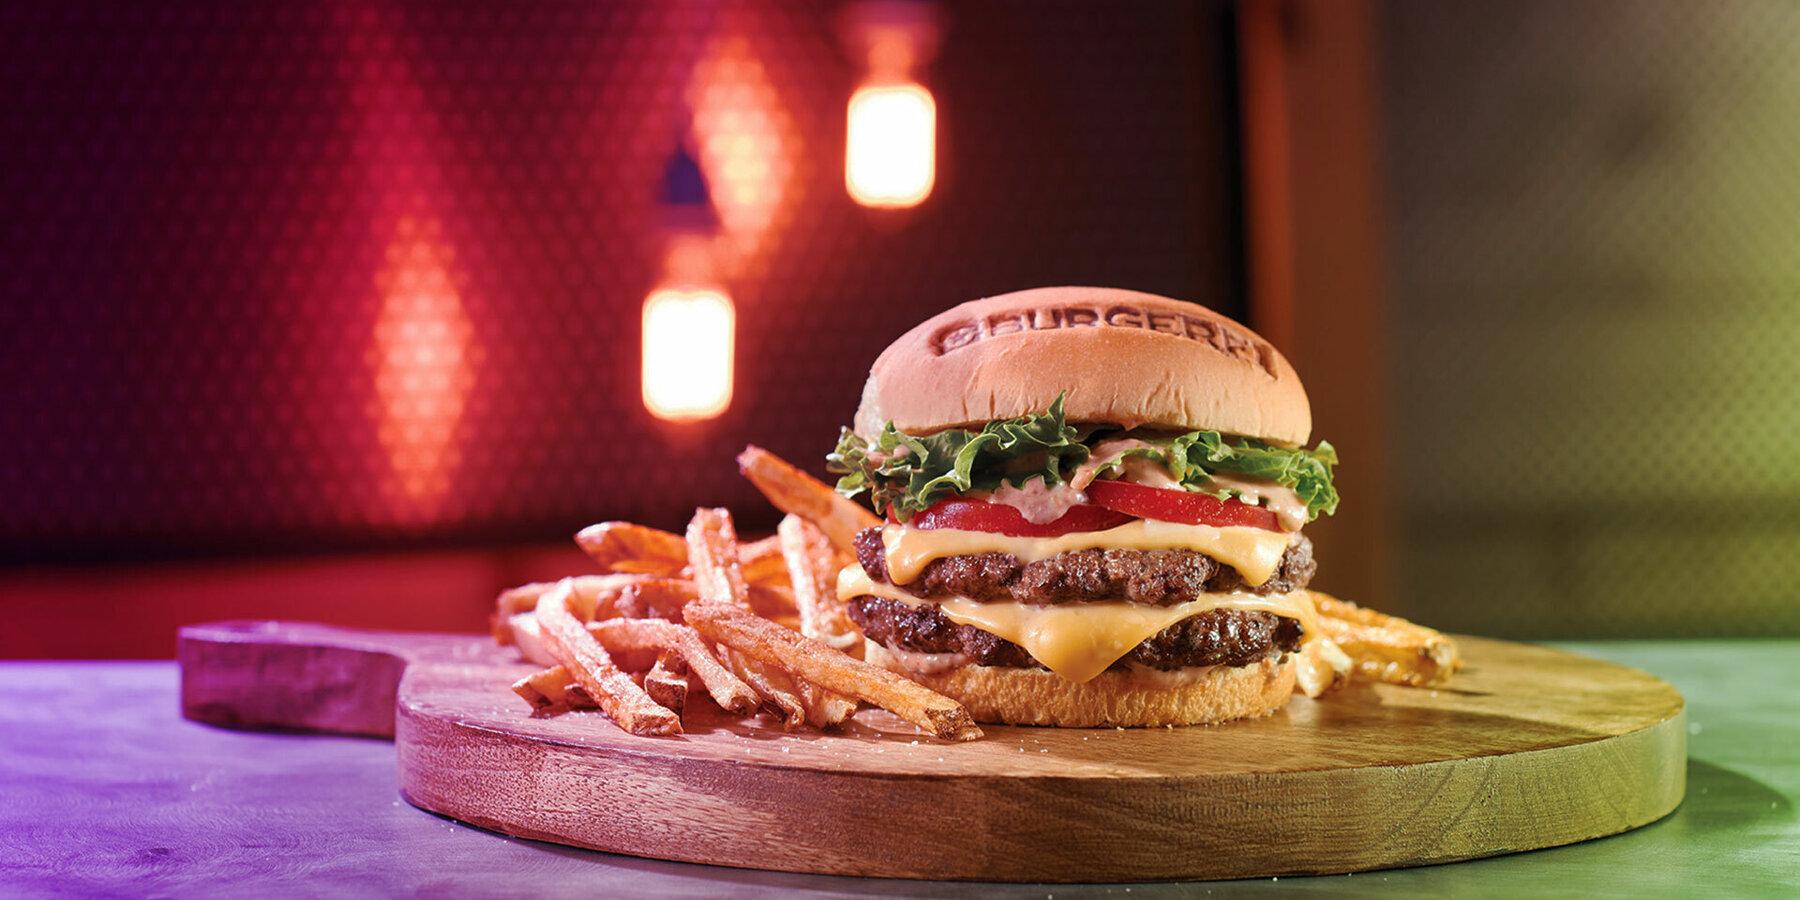 Burgerfi background image 1